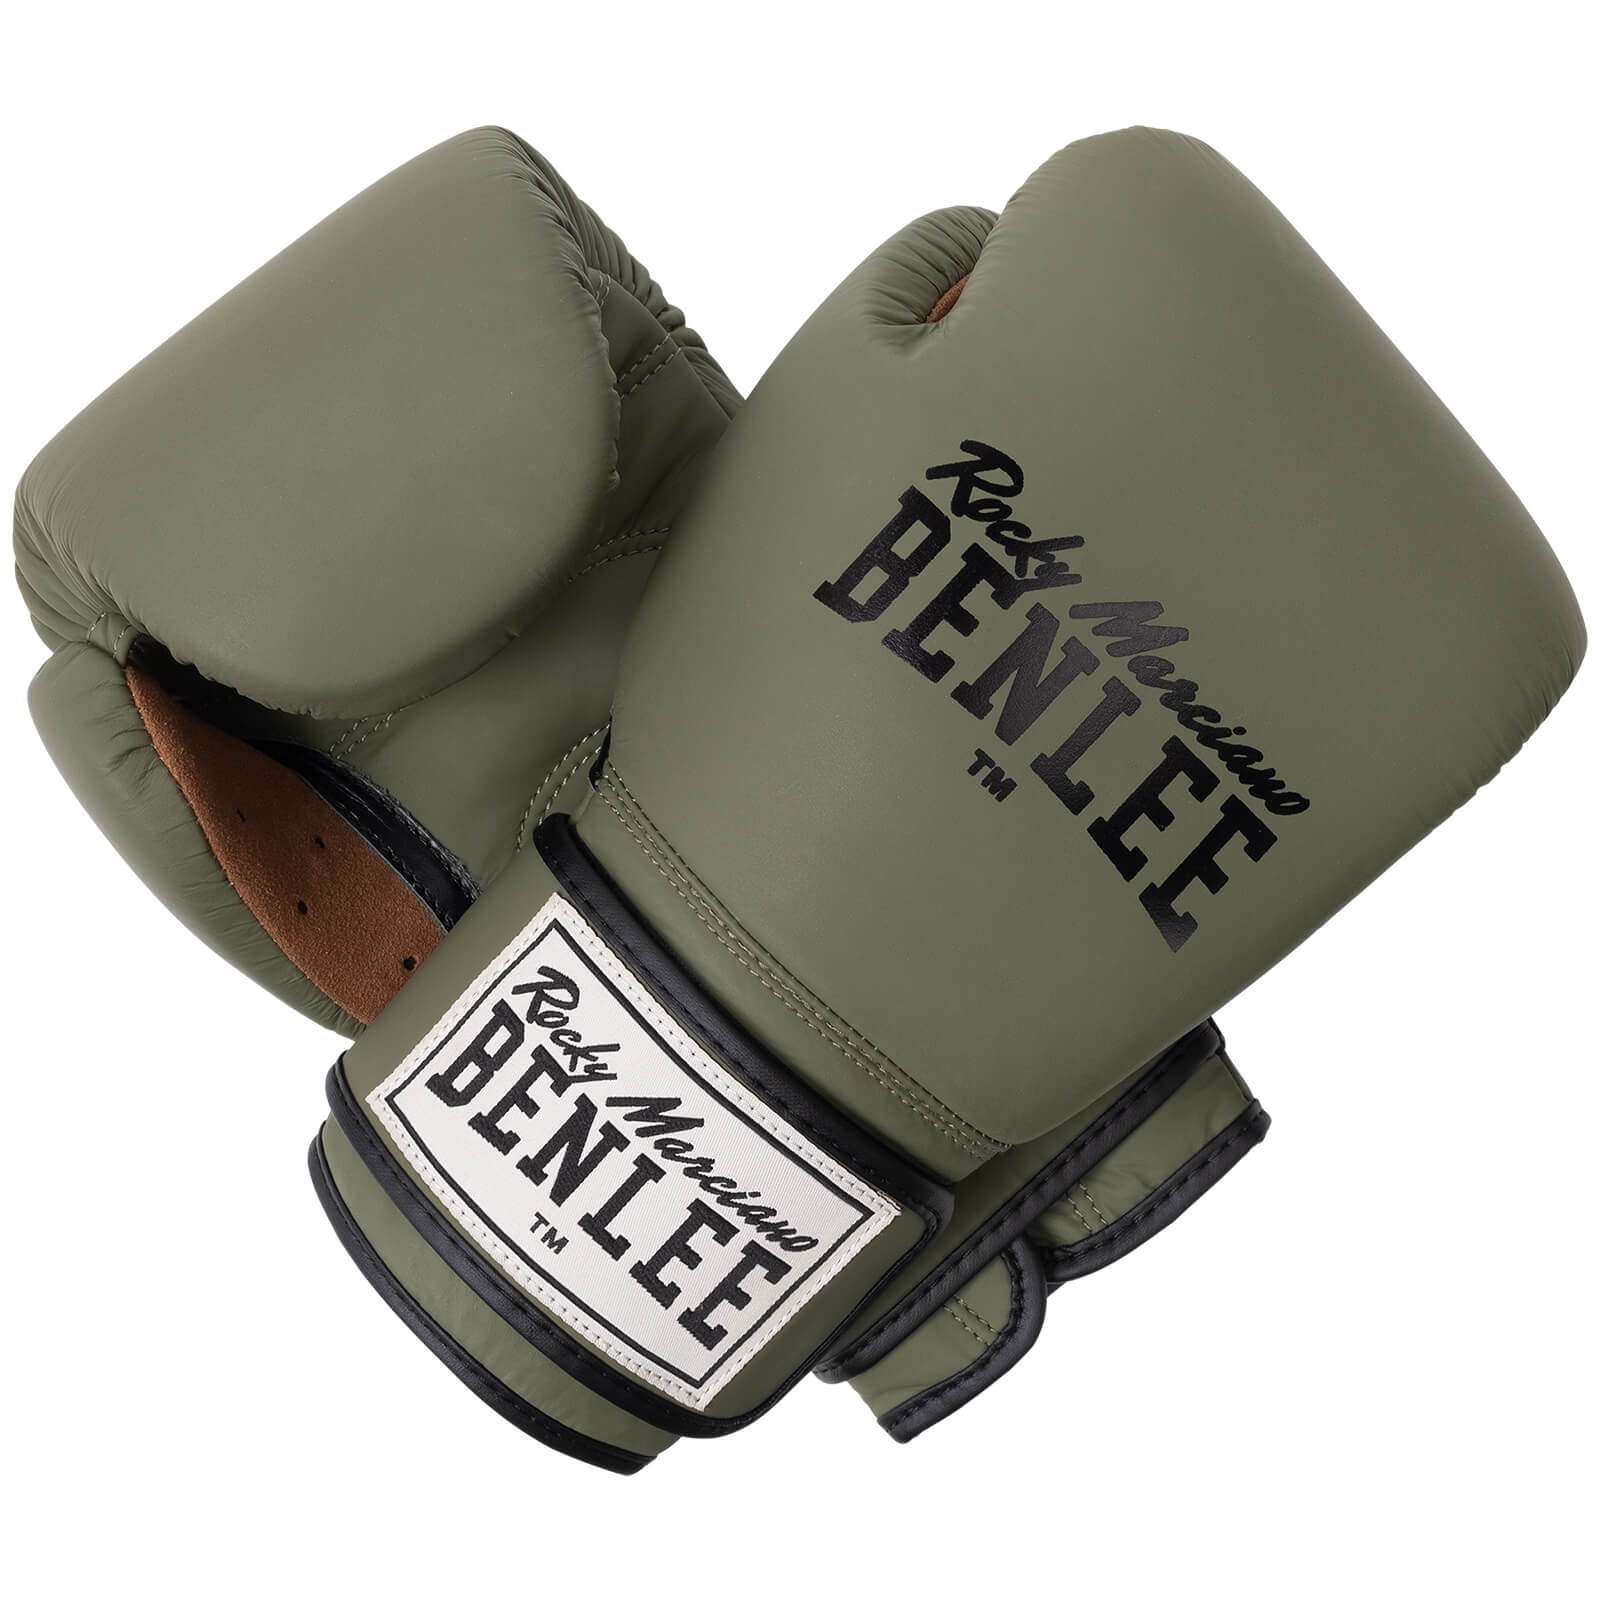 Kickbox günstig Handschuhe kaufen online